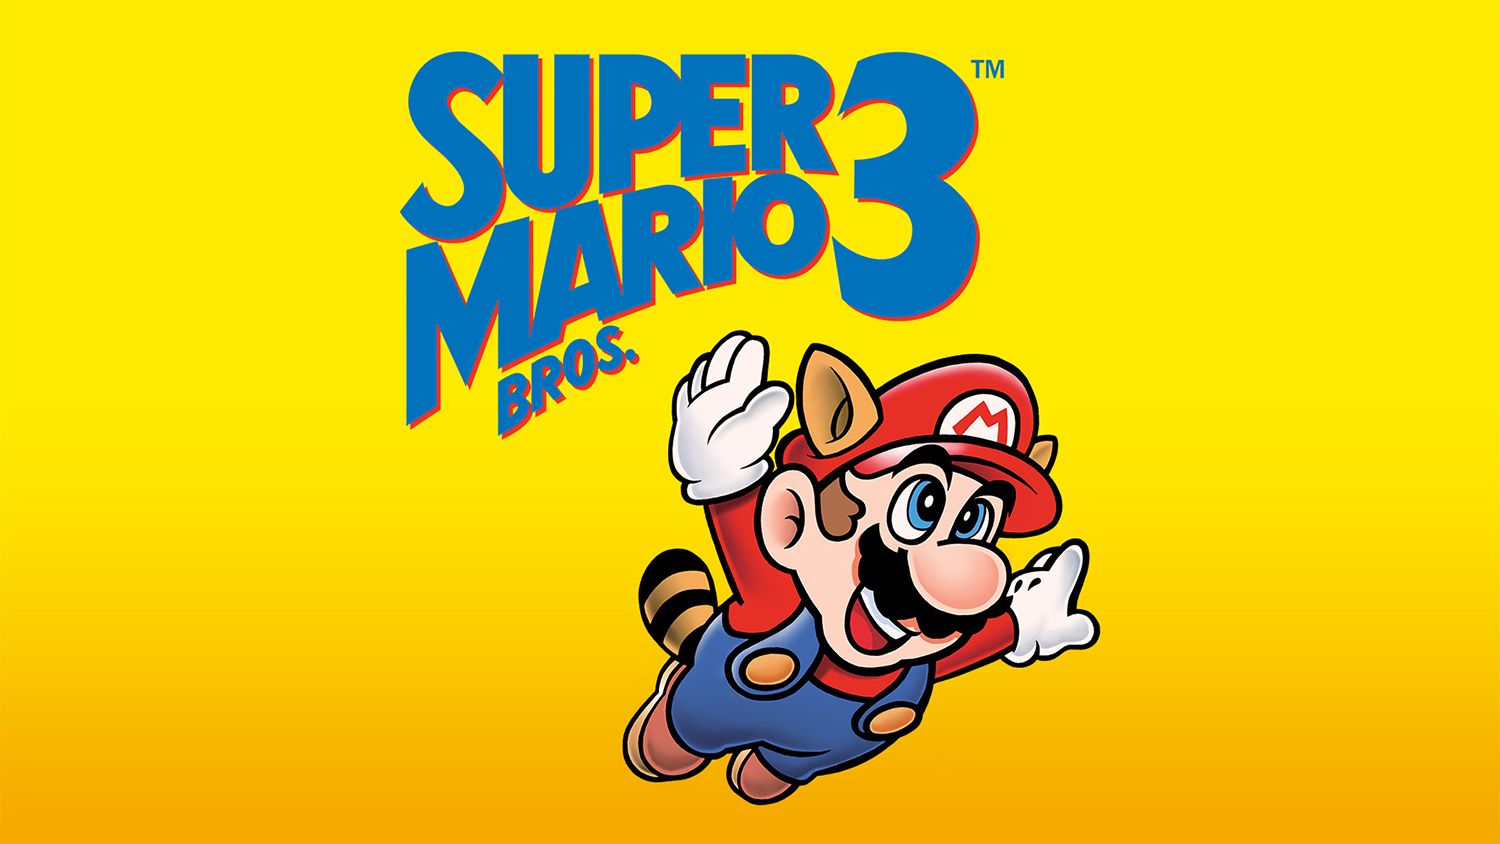 R$ 3,76 milhões: cartucho de 'Super Mario' é o mais caro da história